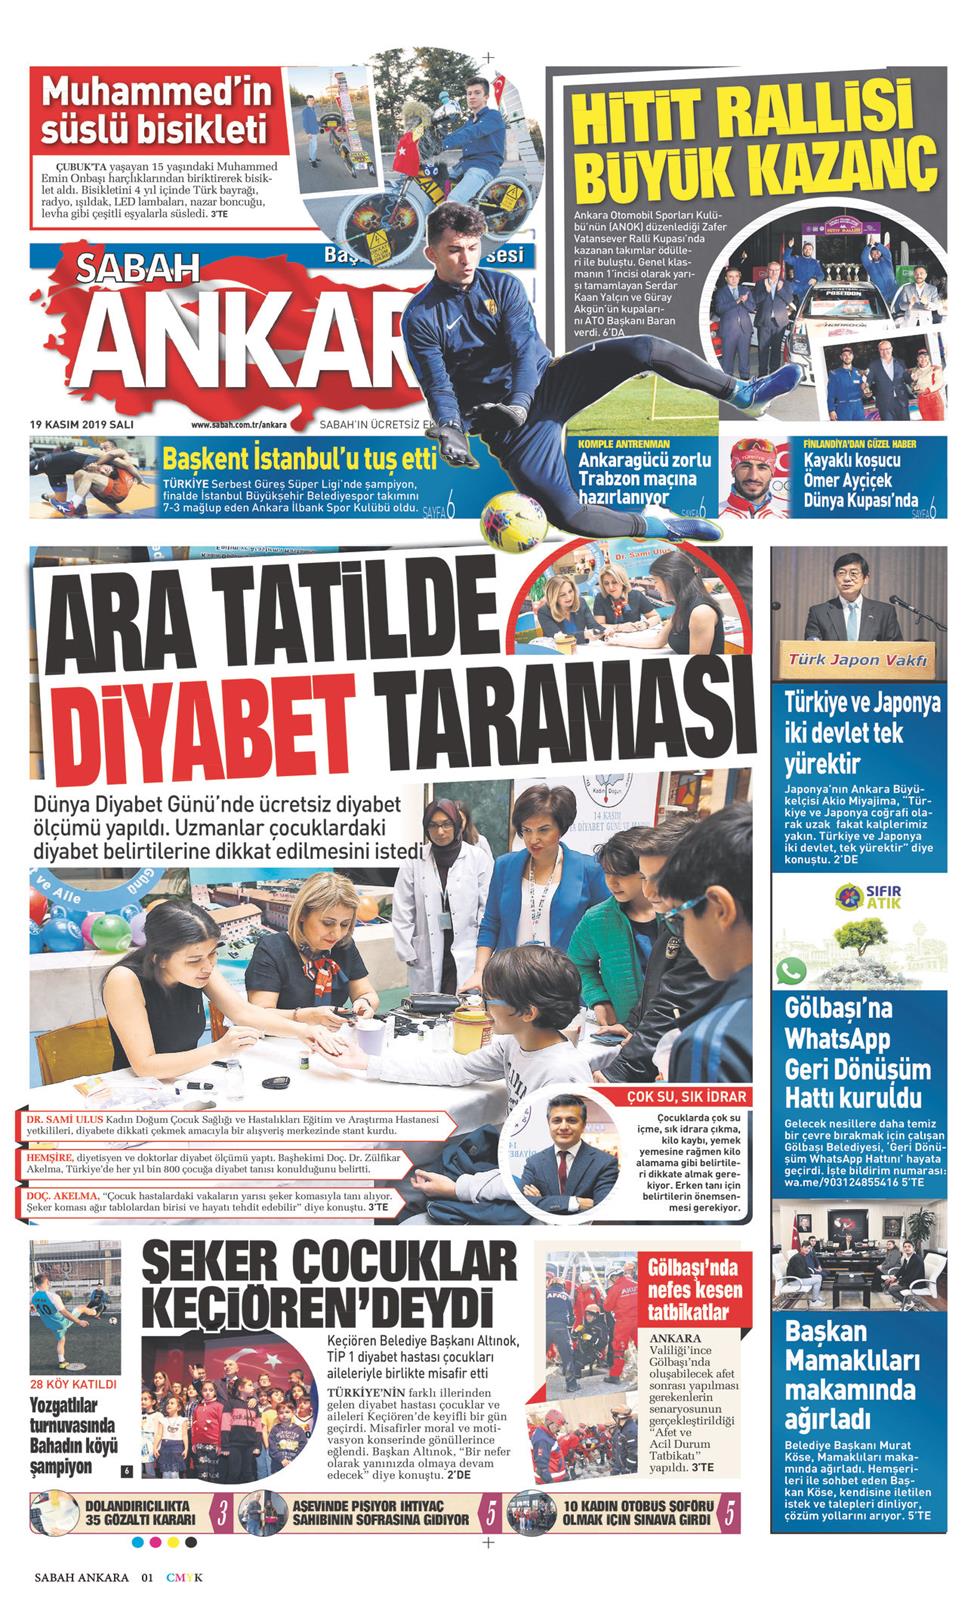 Sabah Ankara